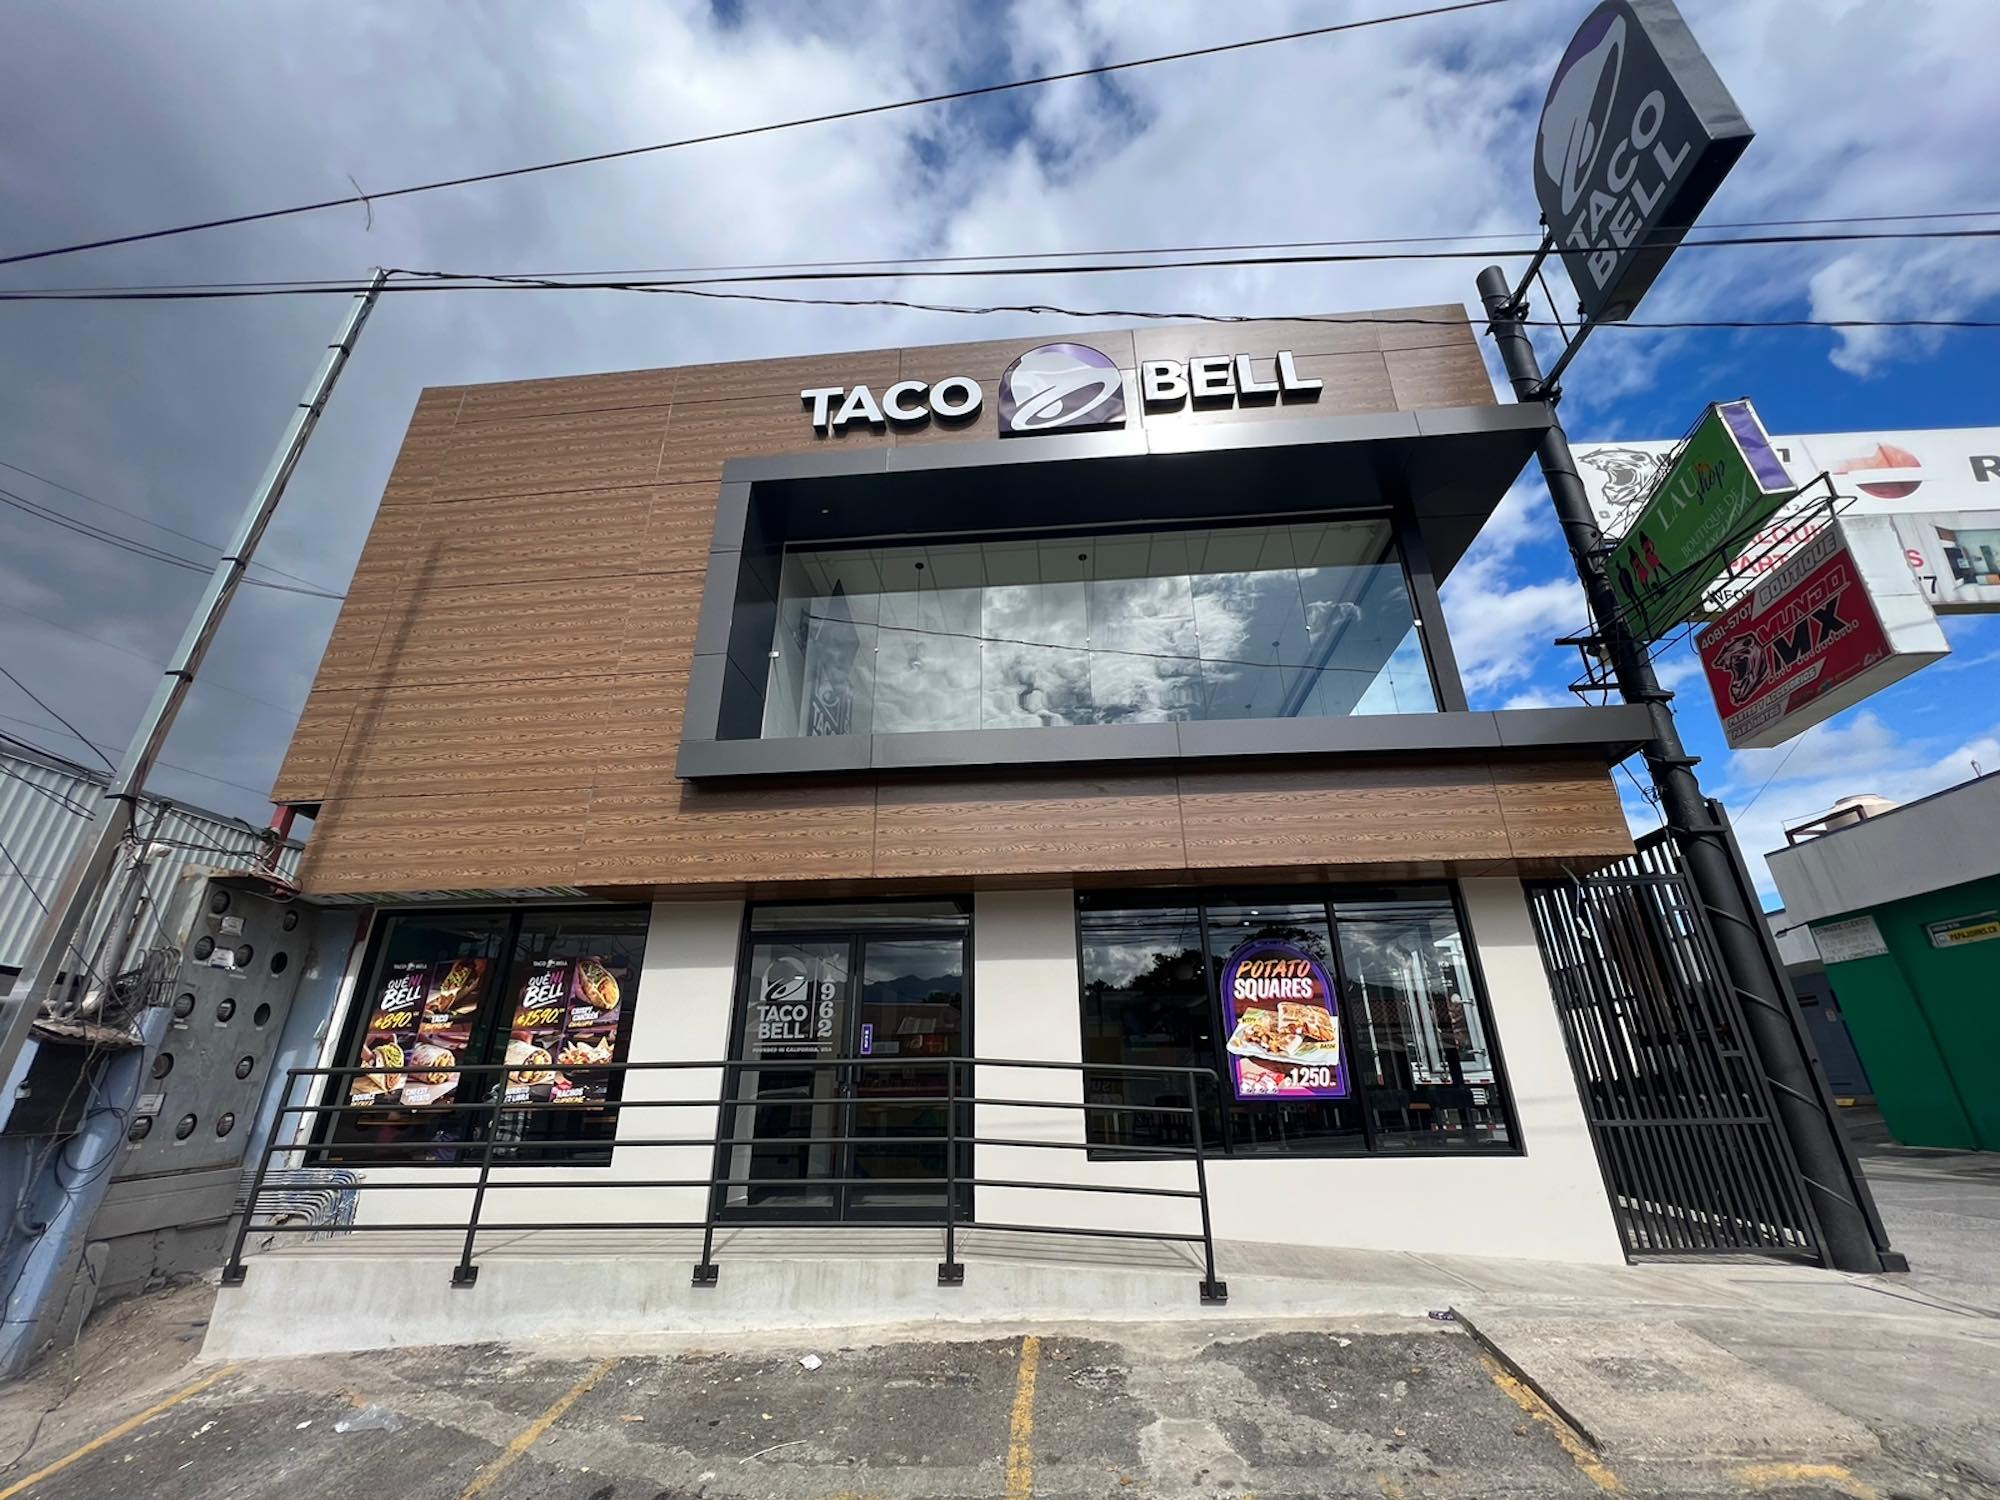 Taco Bell Costa Rica inicia este 2023 con dos aperturas